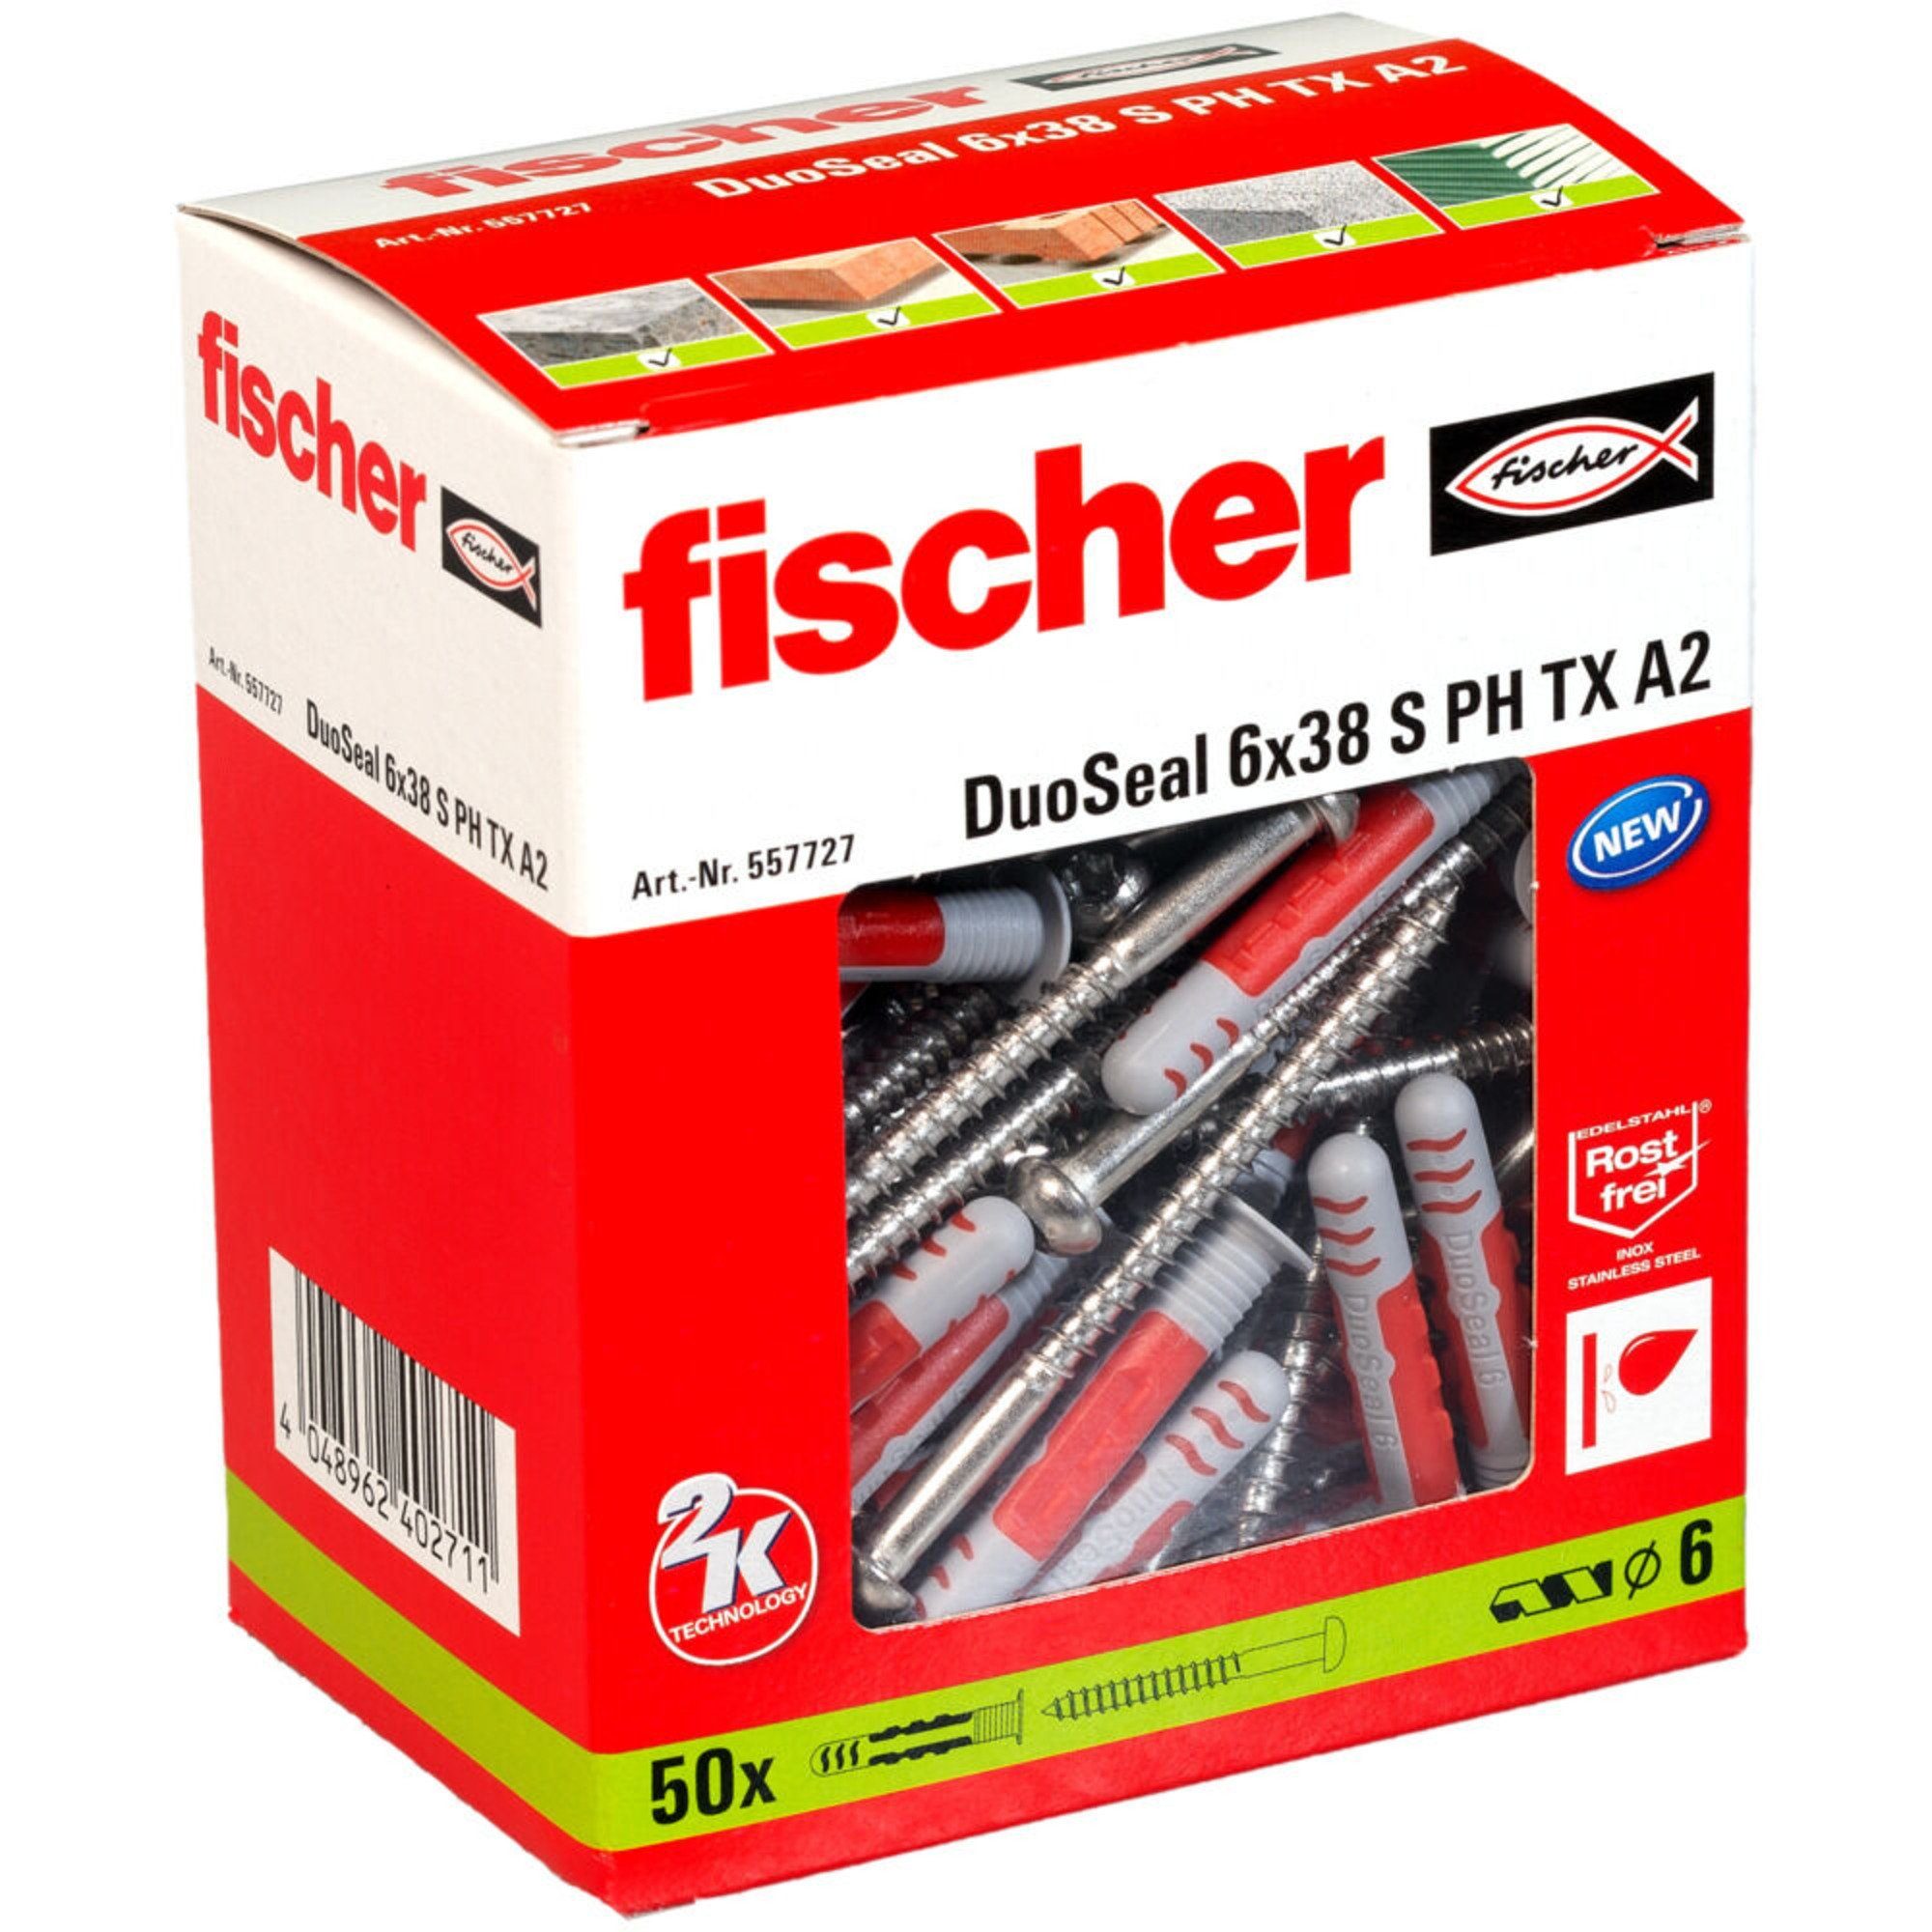 Fischer Universaldübel fischer Dübel DuoSeal 6x38 S PH TX A2, (50 Stück